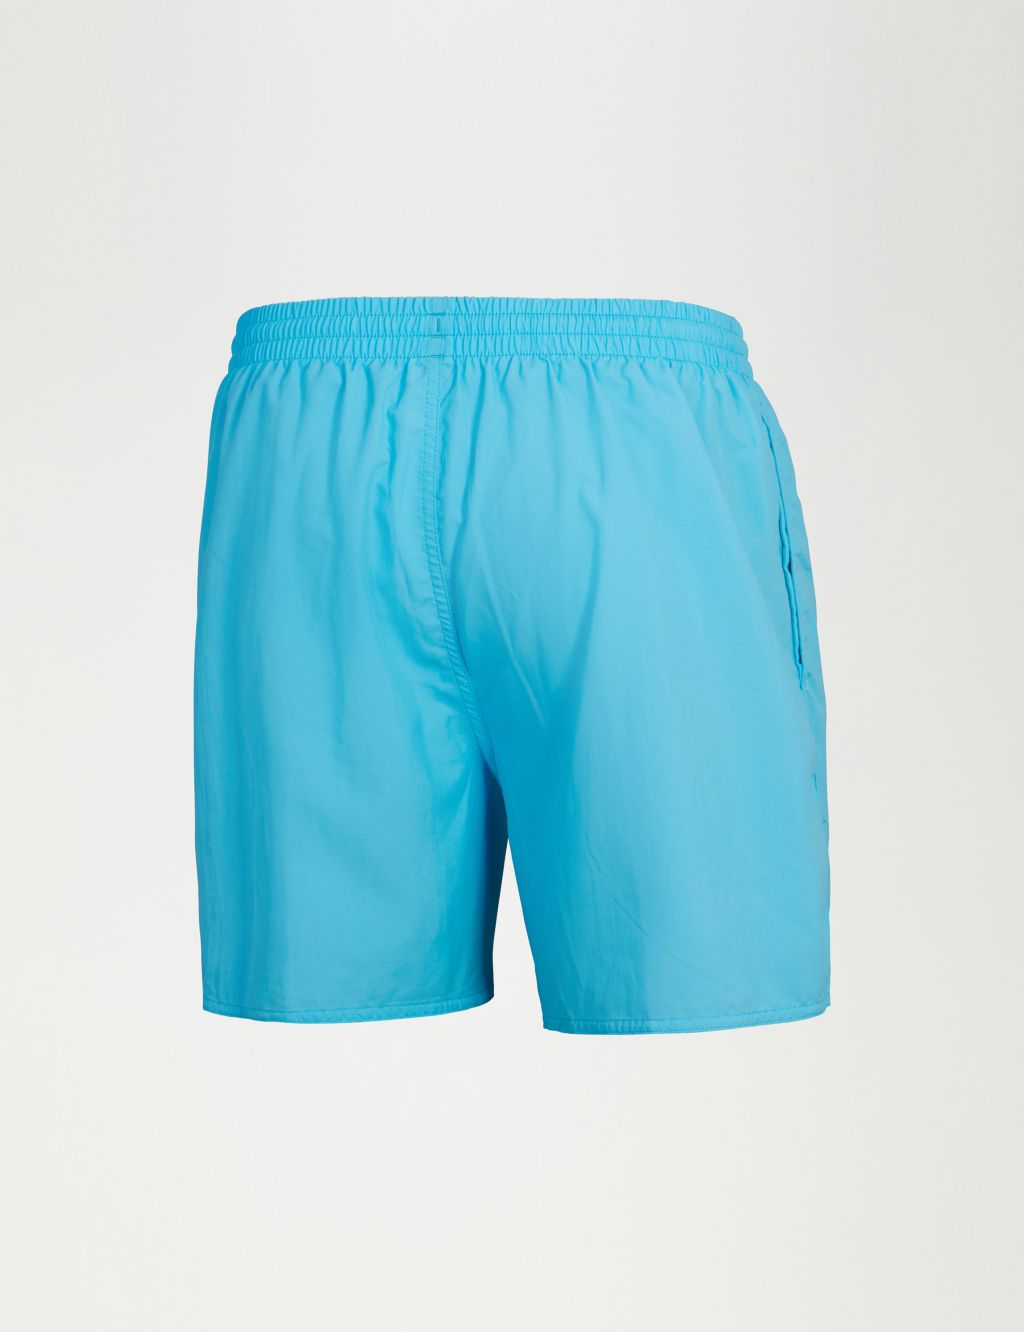 Pocketed Swim Shorts image 7